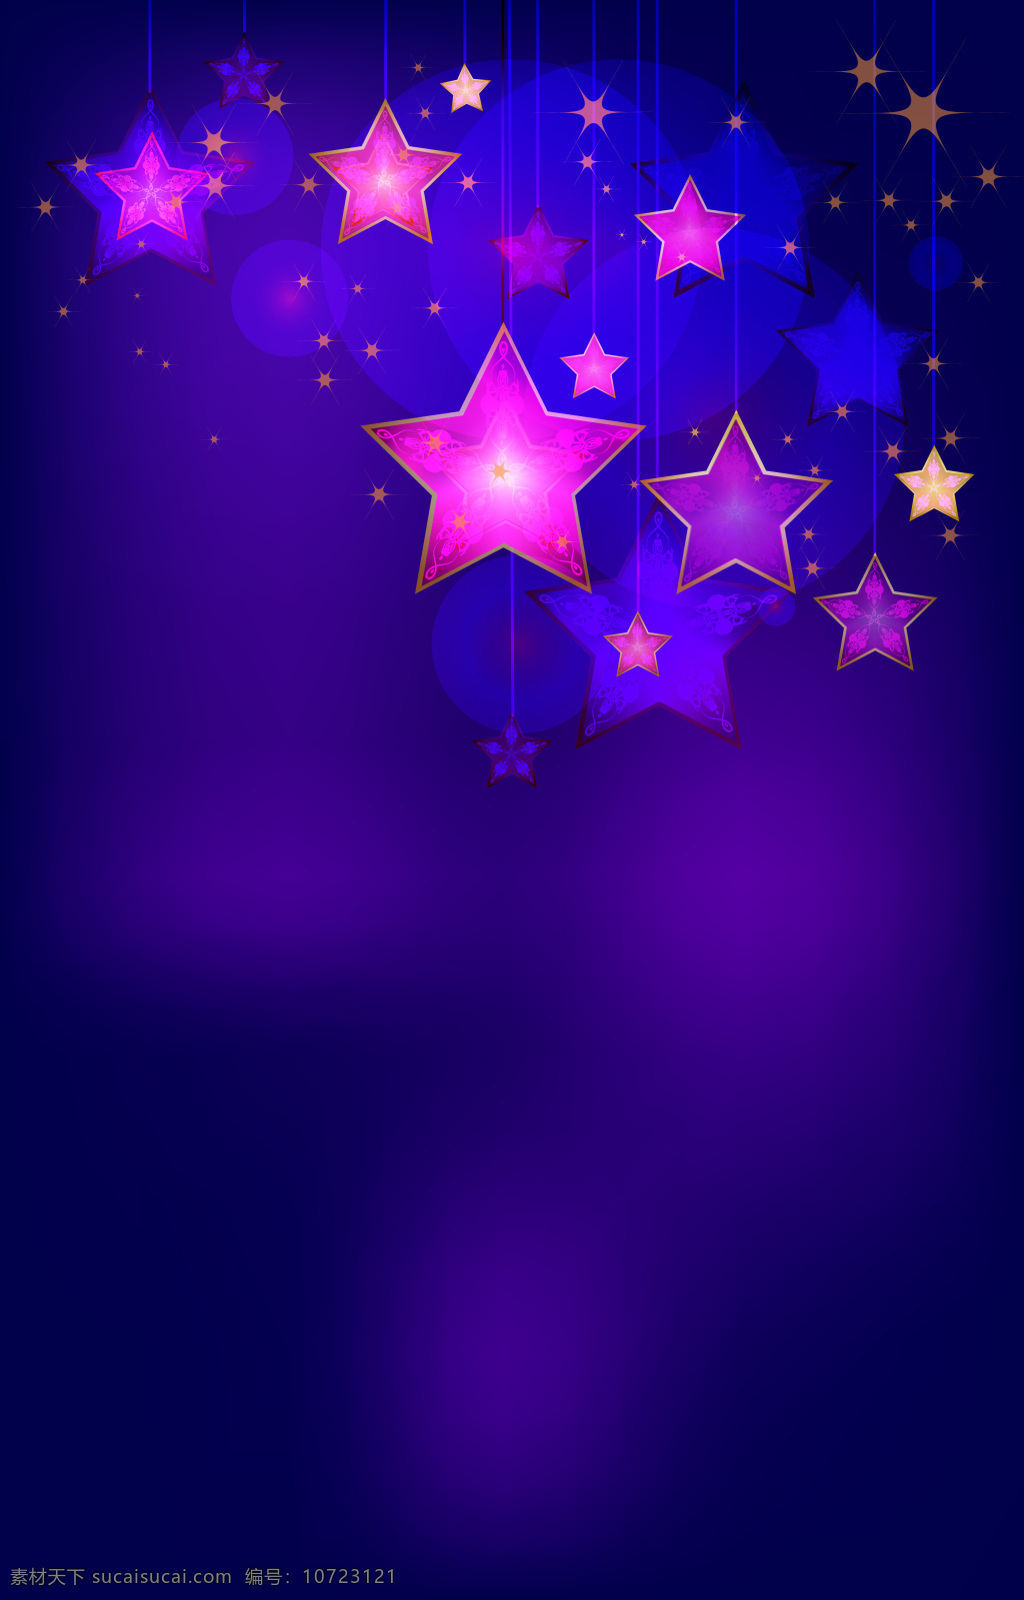 紫色 梦幻 五角星 背景 渐变 星星 海报 矢量素材 高清 设计图 五角星素材 欢喜